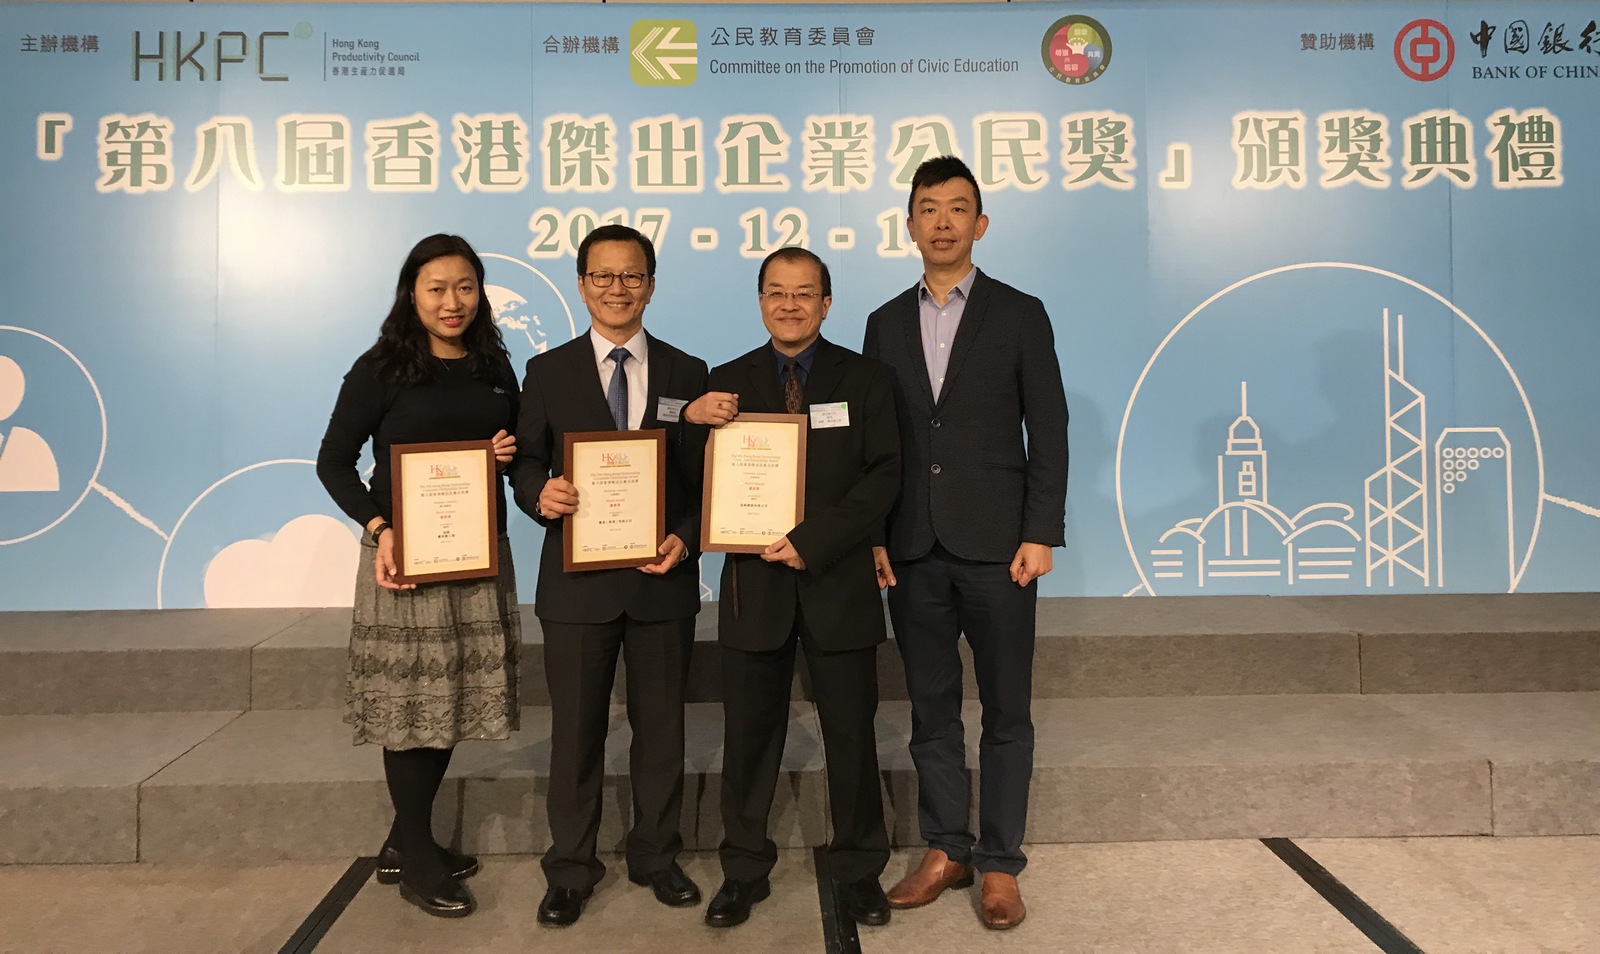 协兴和惠保获颁发香港杰出企业公民奖